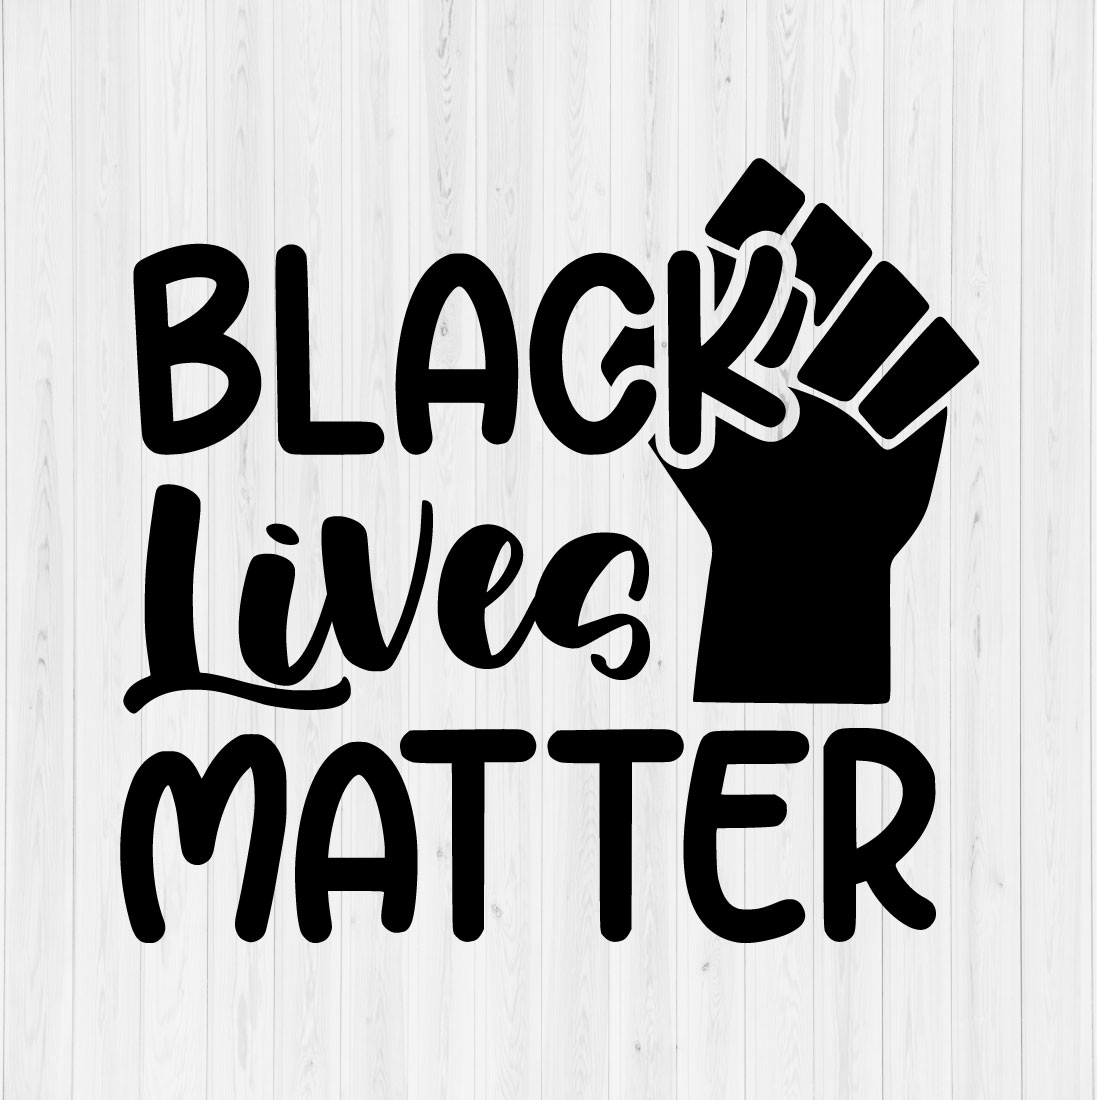 Black Lives Matter preview image.